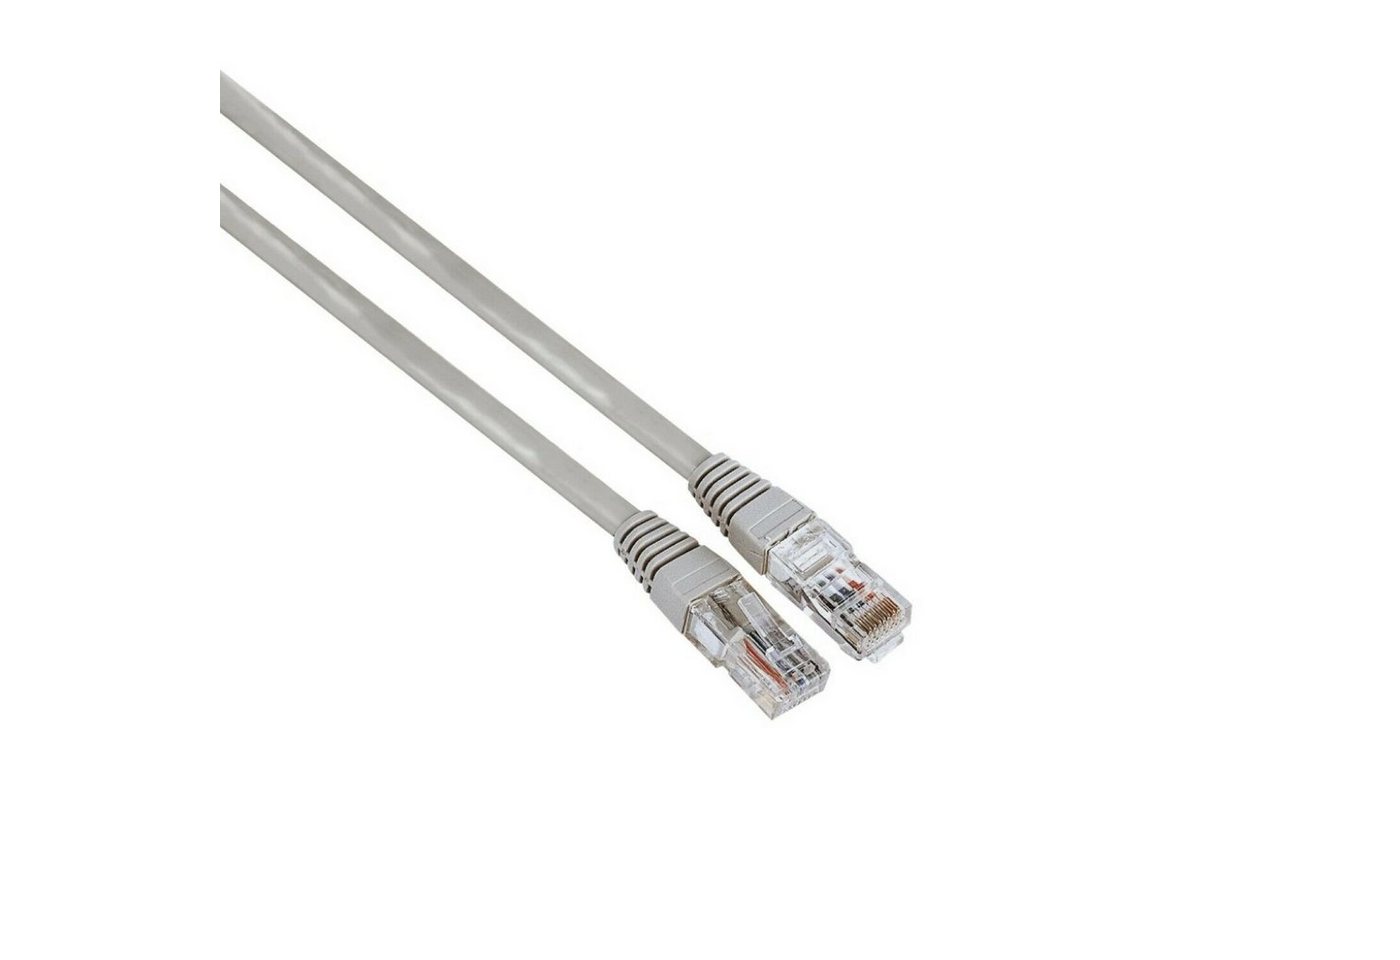 Hama 10m Netzwerk-Kabel Cat5e UTP Lan-Kabel LAN-Kabel, RJ45, Kein (1000 cm), Patch-Kabel Cat 5e Gigabit Ethernet von Hama